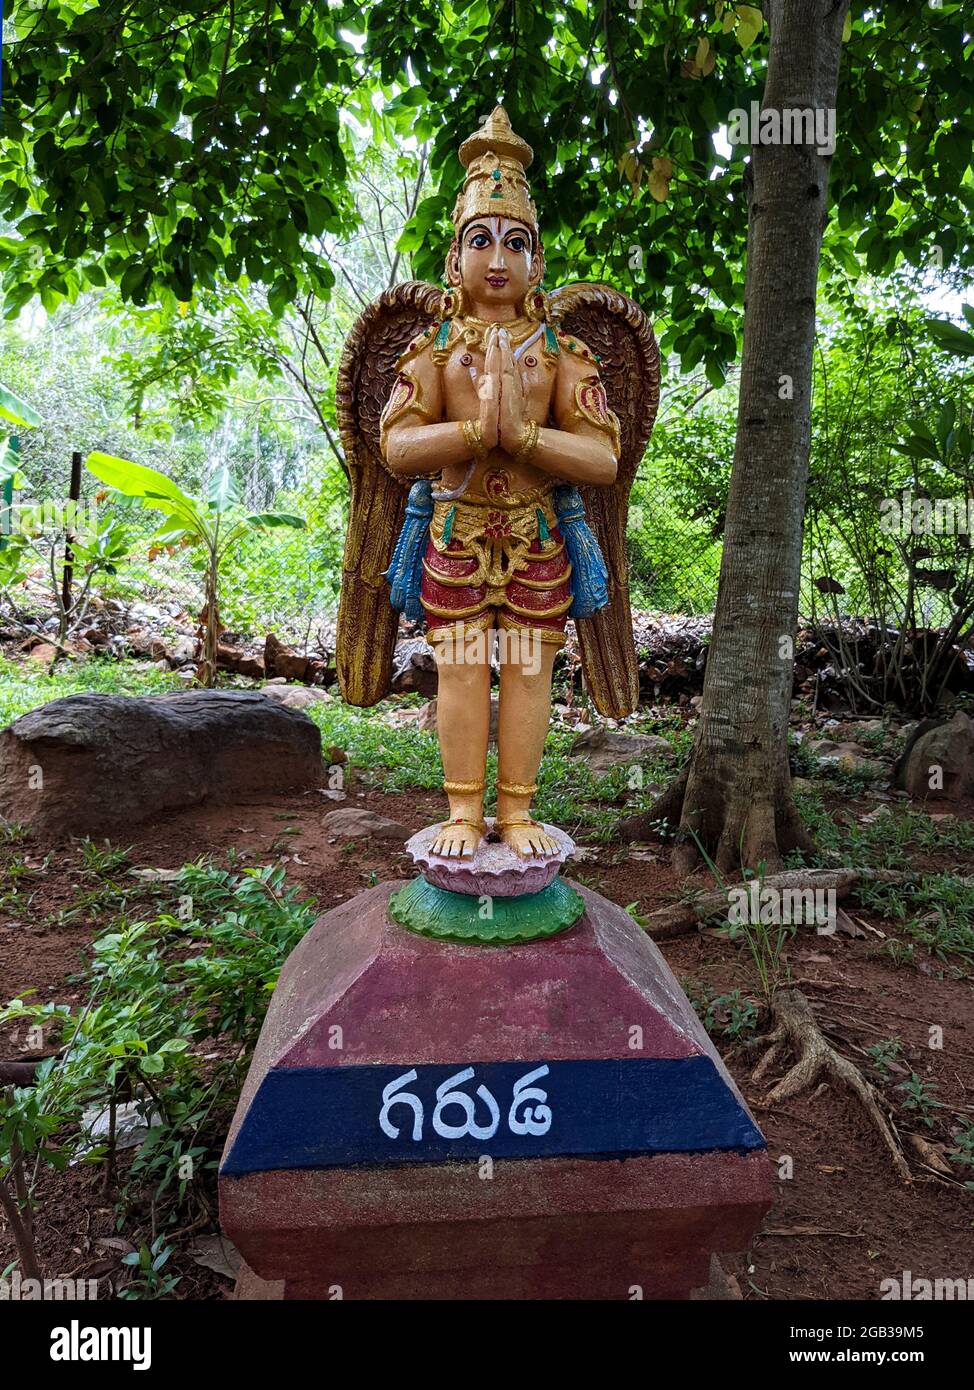 Un largo disparo de la estatua de Garuda en pie en el arco natural del jardín de roca en Tirumala: Tirumala, Andhra Pradesh, India-Julio de 10,2021 Foto de stock